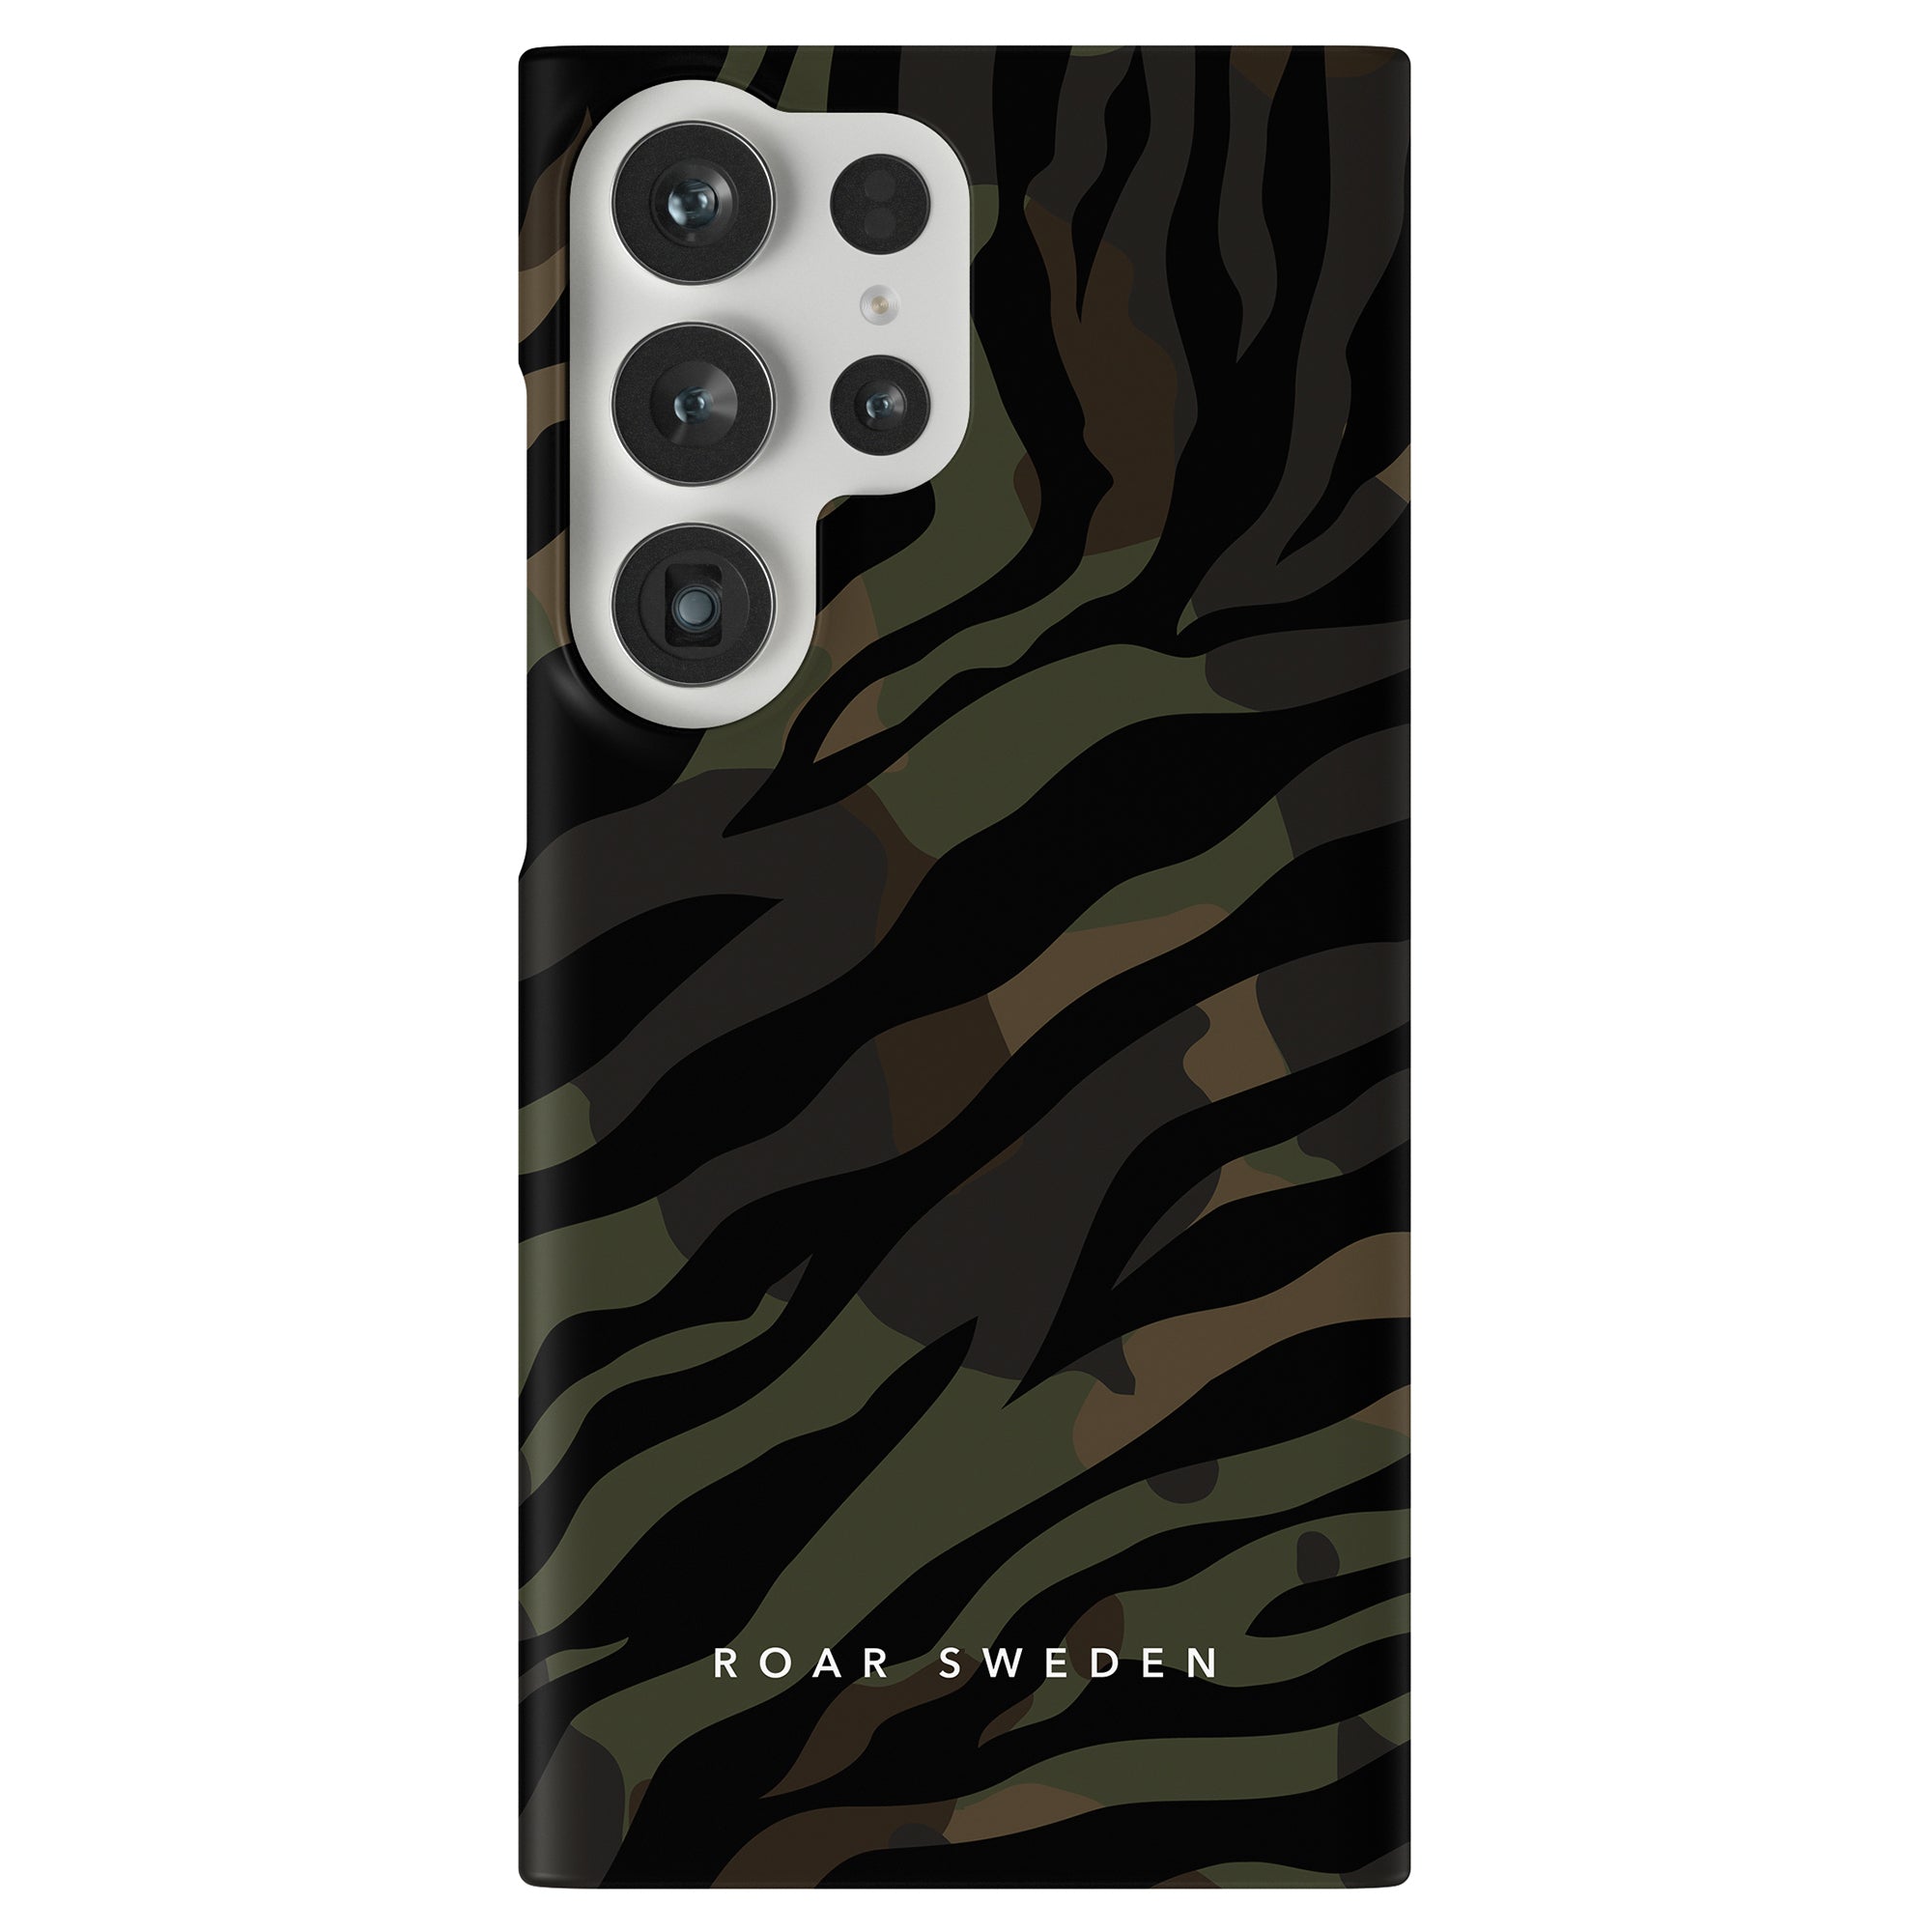 An Army - Tunt fodral med kamouflagemönster som skyddar din telefon.